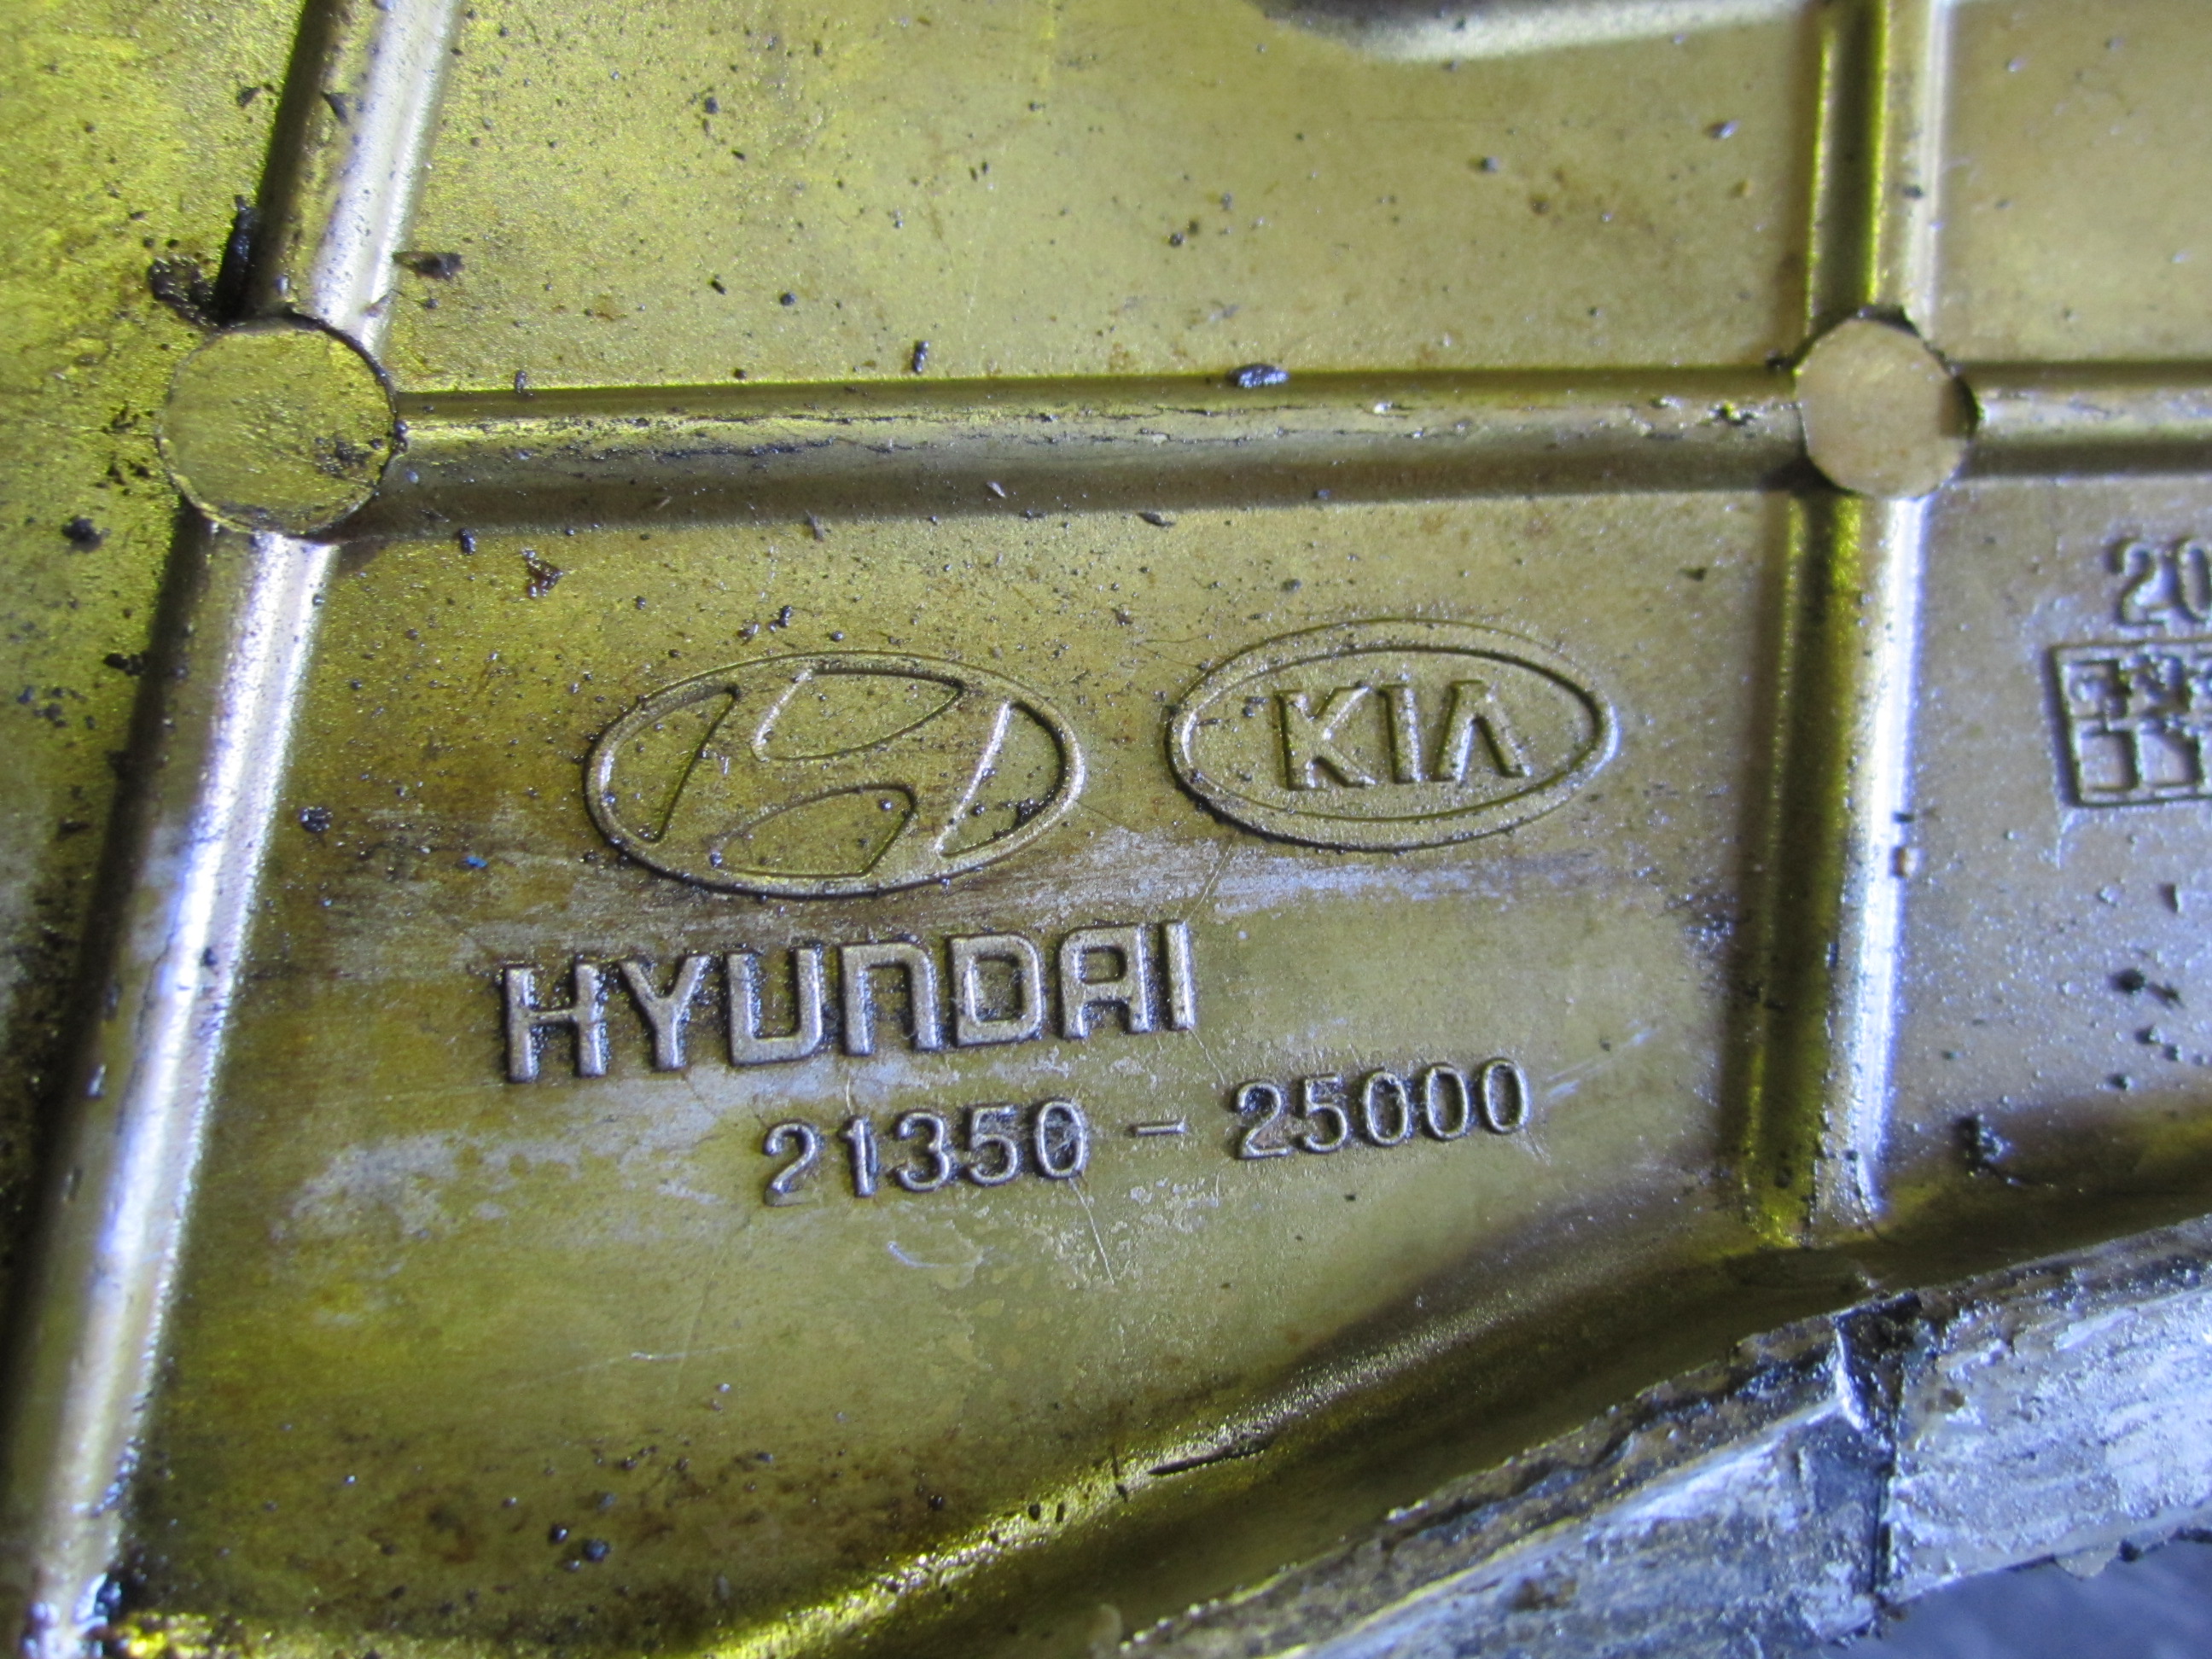 Крышка двигателя передняя : 21350-25000 на Hyundai NF